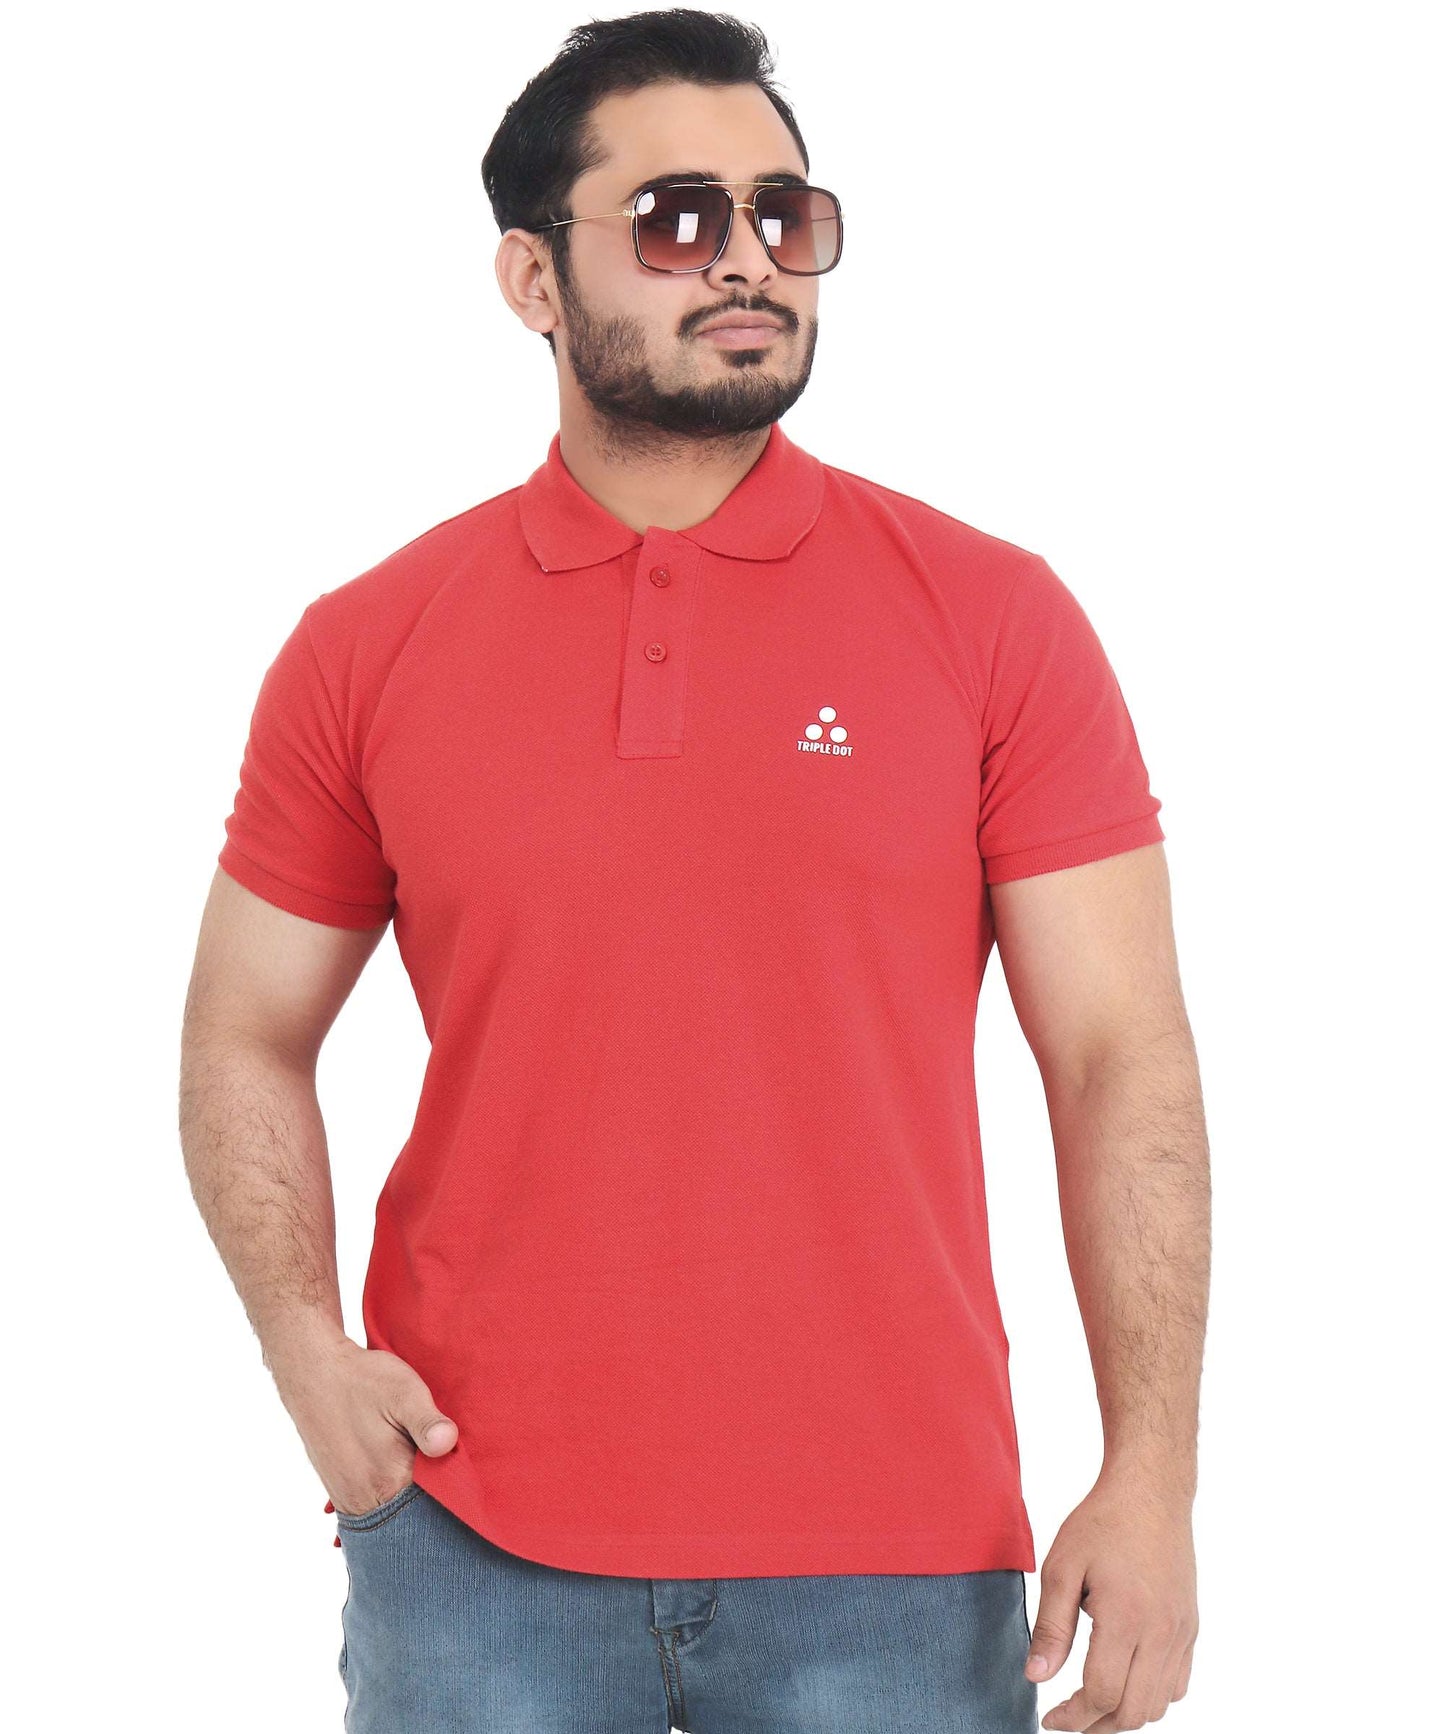 Triple Dot Double Pique Red Polycotton Premium Polo T shirt for Men